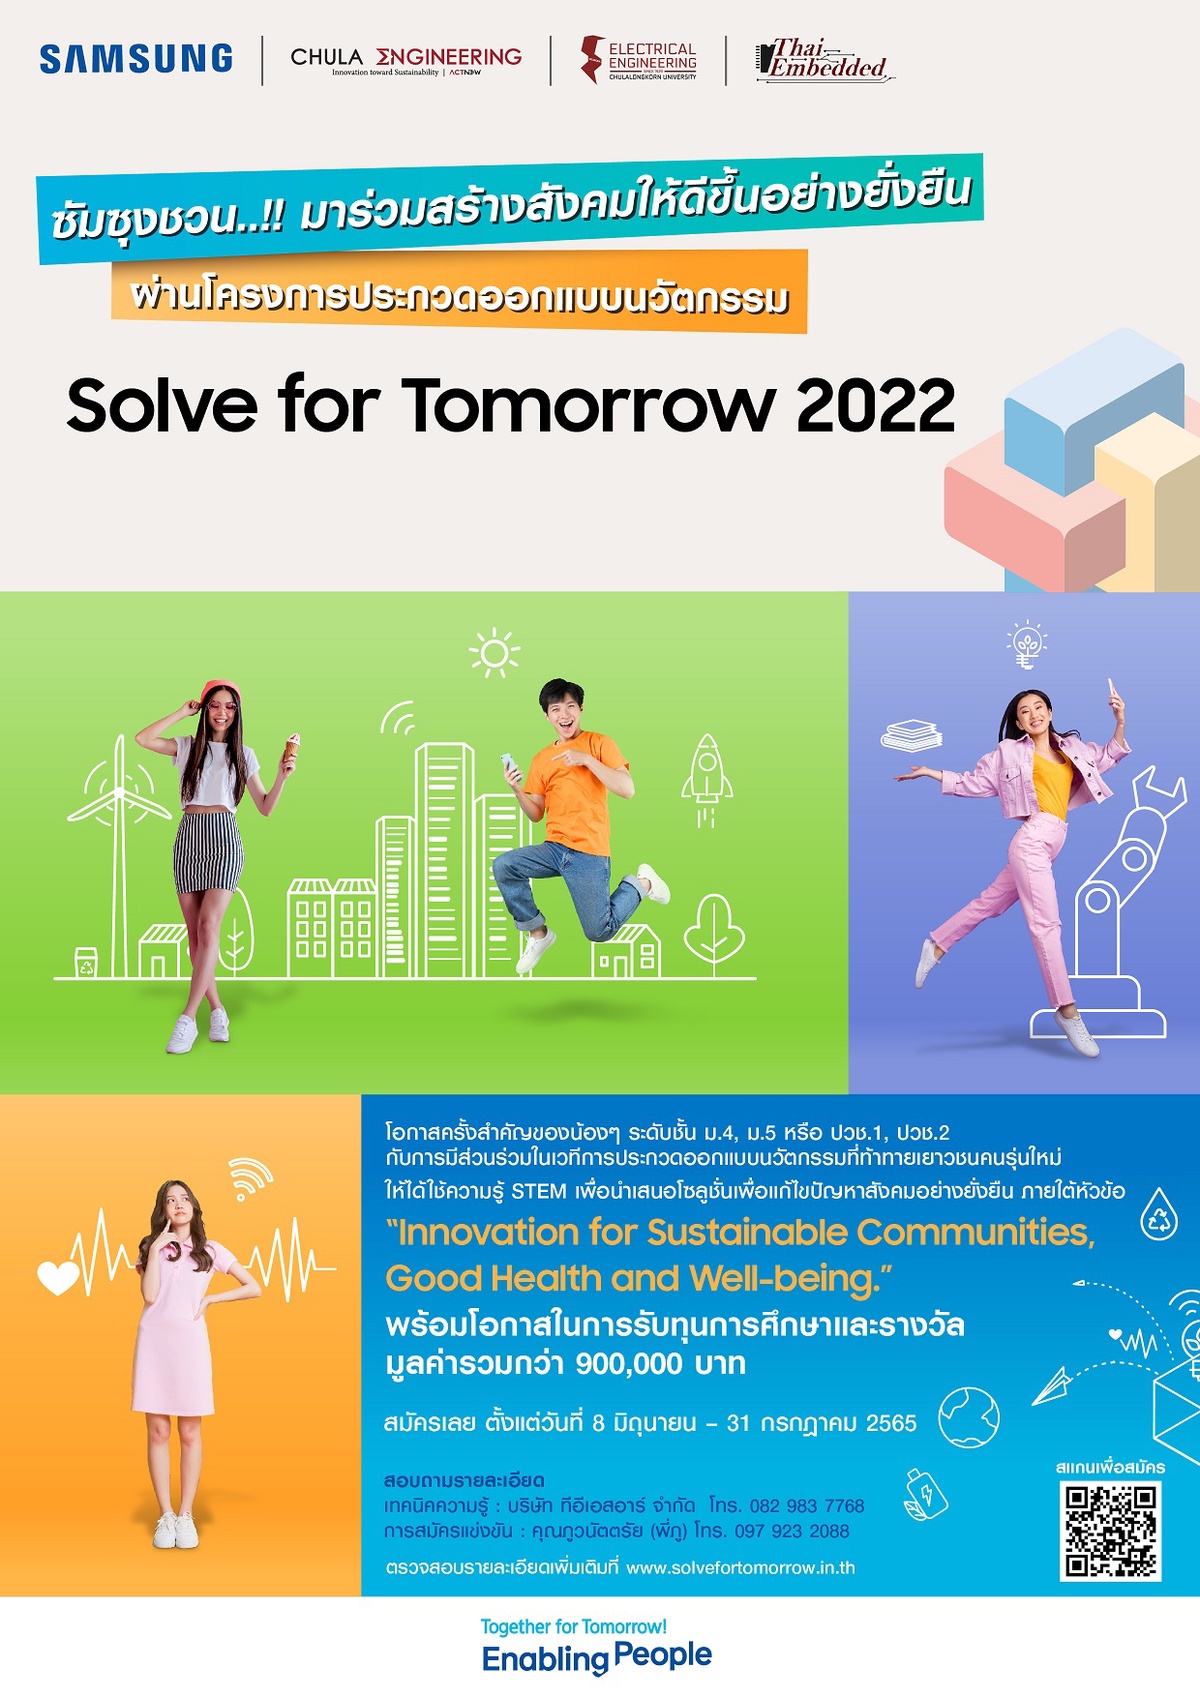 ซัมซุงชวนเยาวชนไทยประชันไอเดียนวัตกรรมเพื่อสังคมที่ดีขึ้นแบบยั่งยืน ผ่านโครงการ Solve for Tomorrow 2022